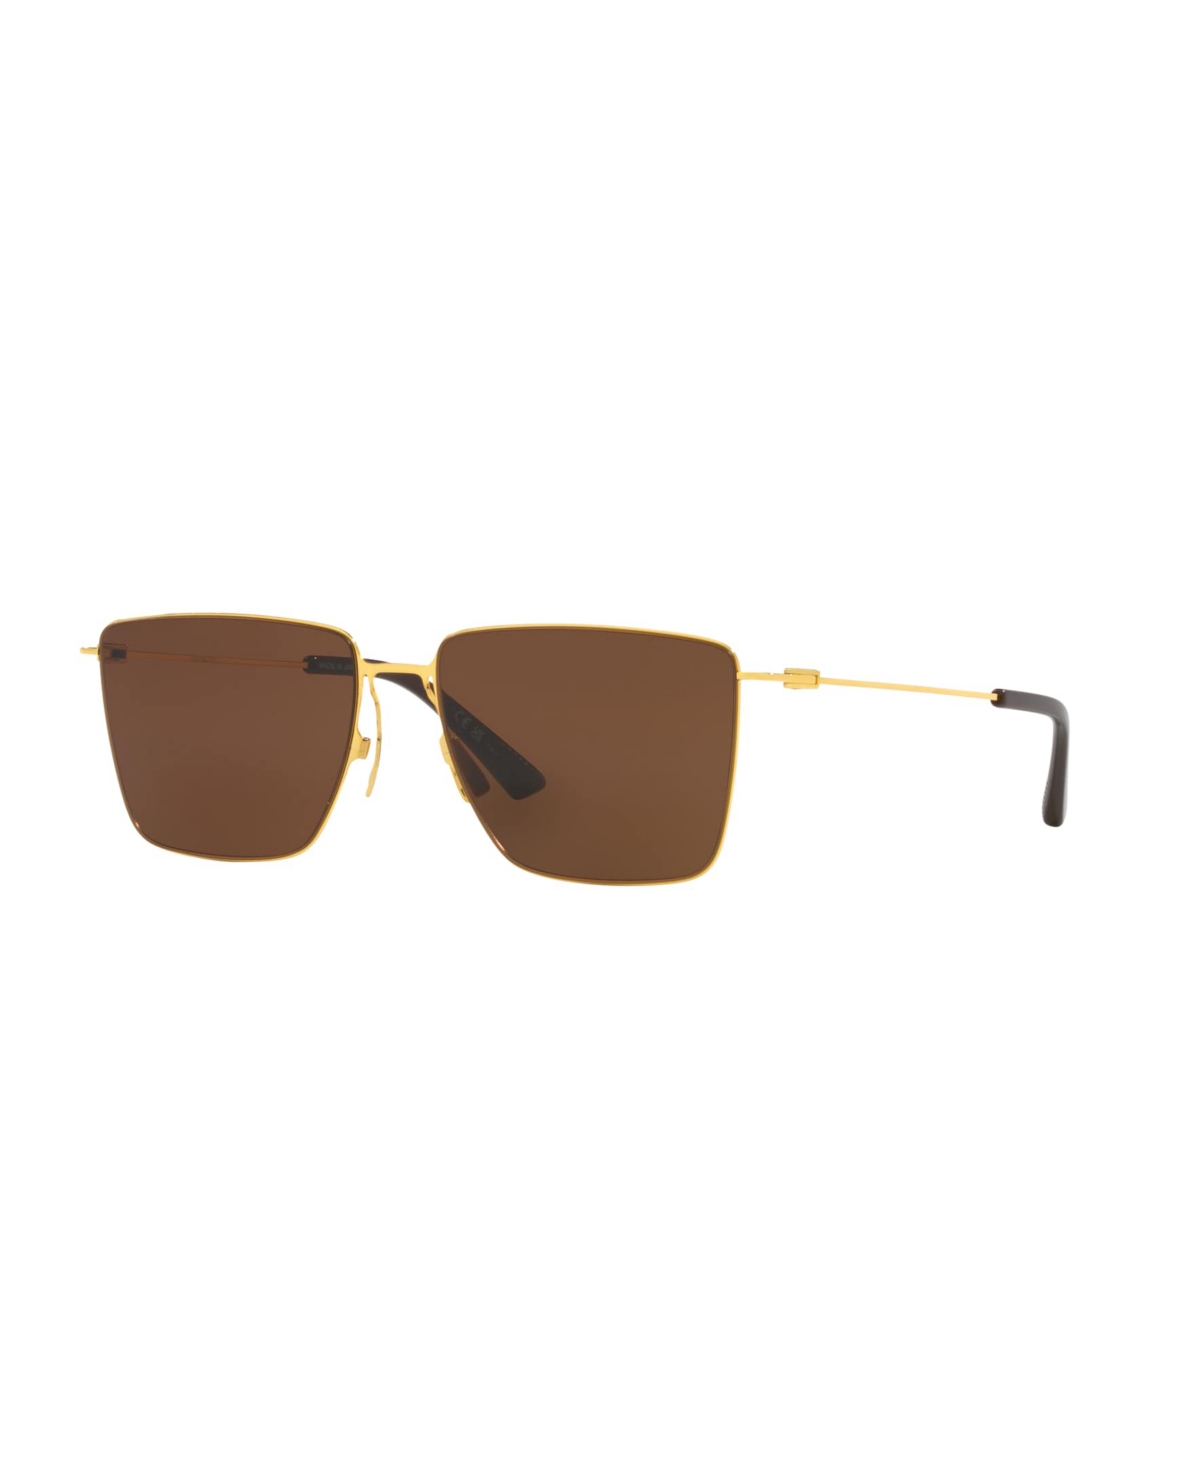 Men's Sunglasses, Bv1267S 6J000422 - Gold, Green